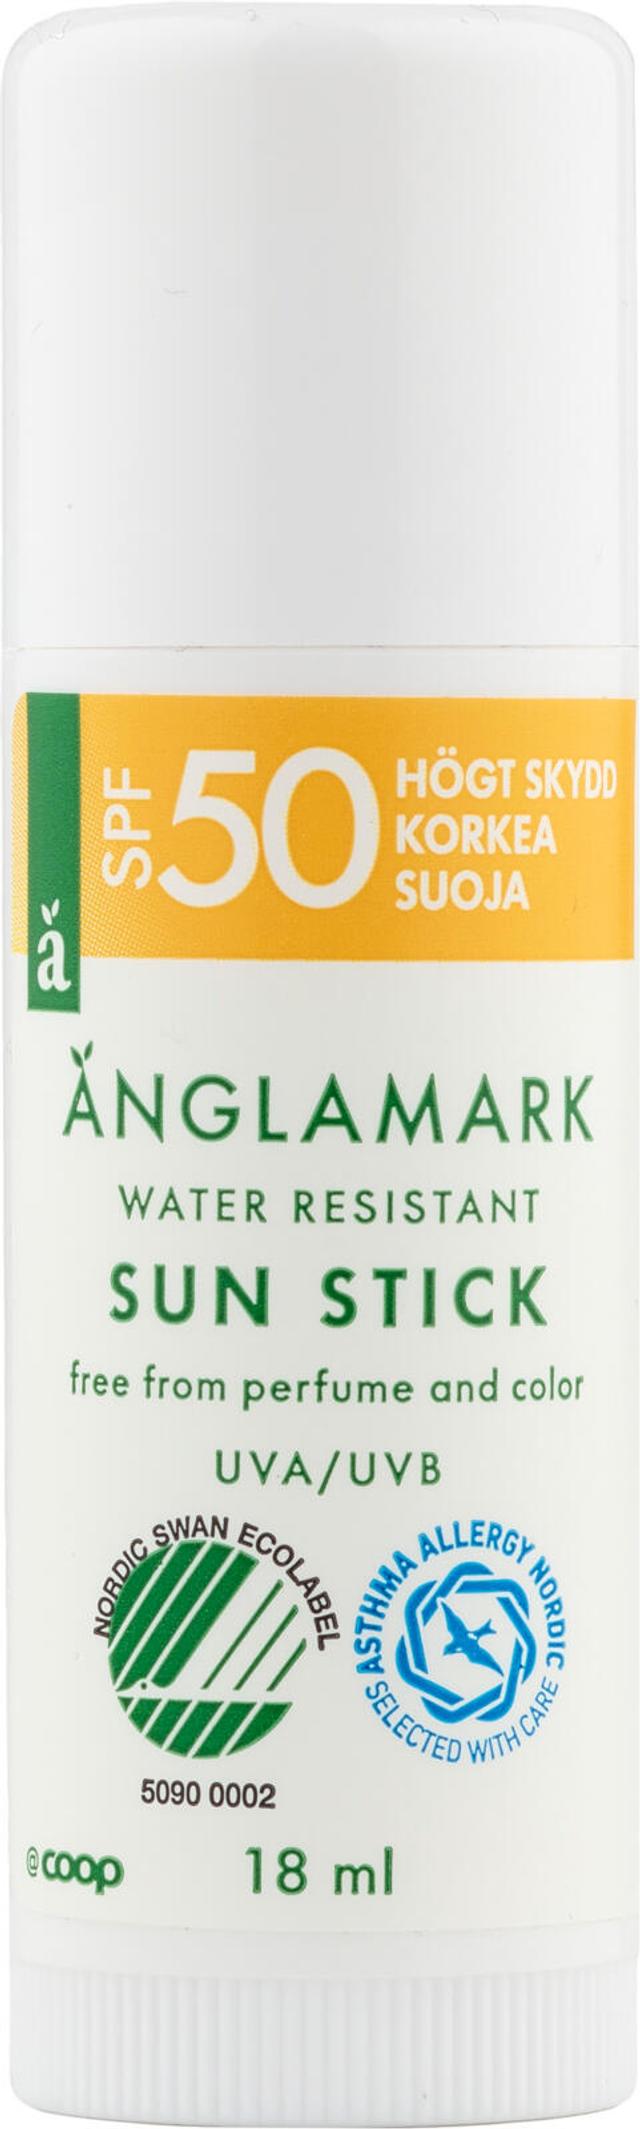 Änglamark Sun stick SPF50 aurinkopuikko 18 ml